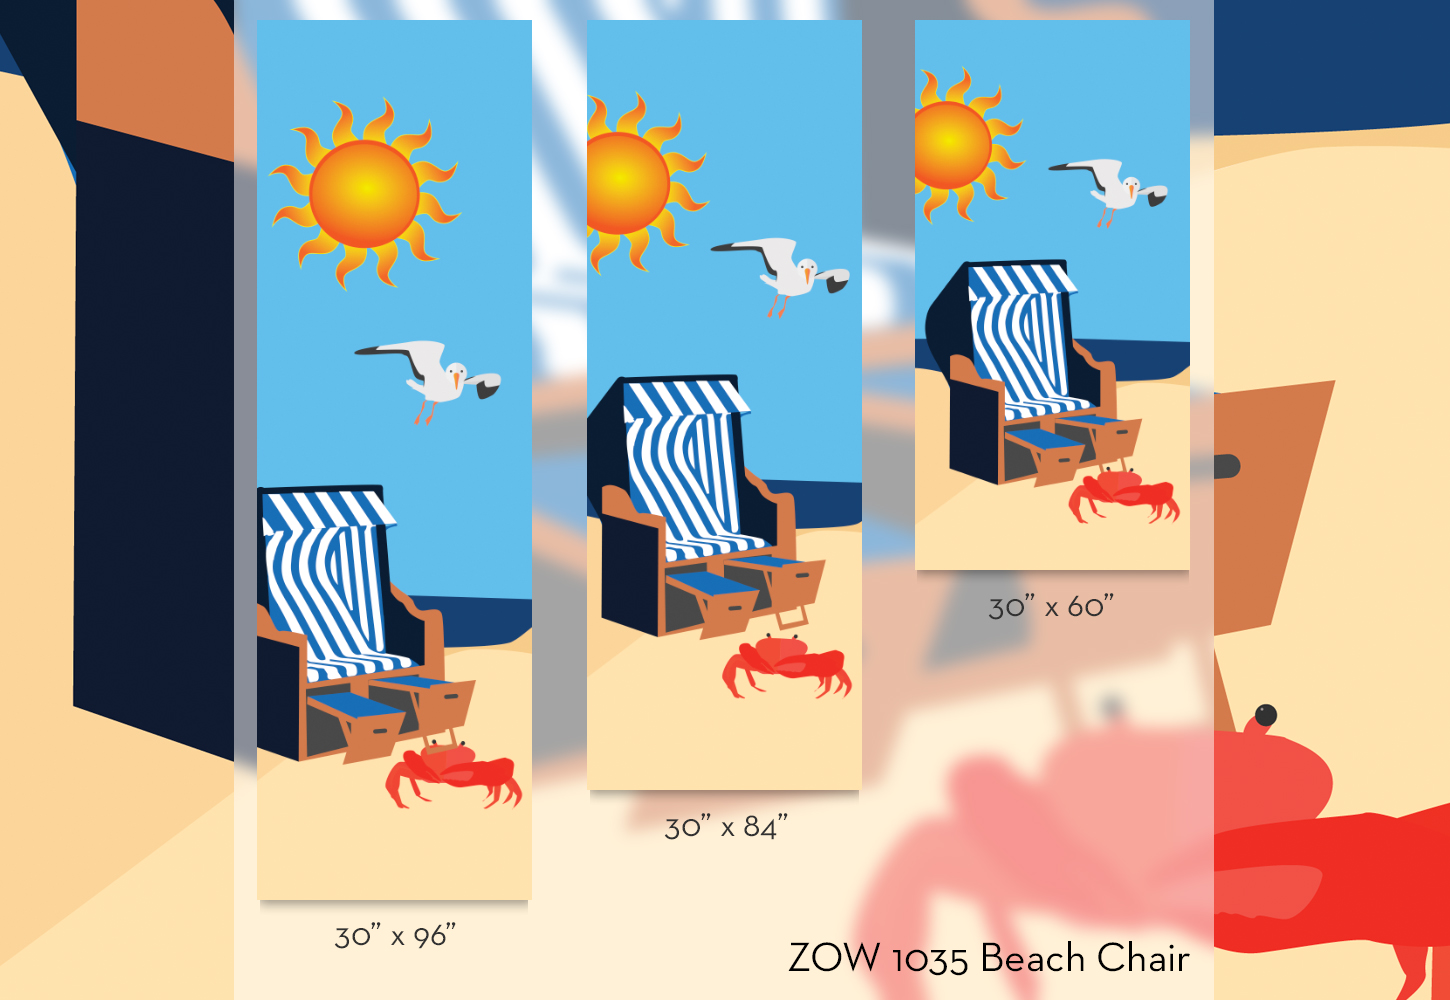 ZOW 1035 Beach Chair